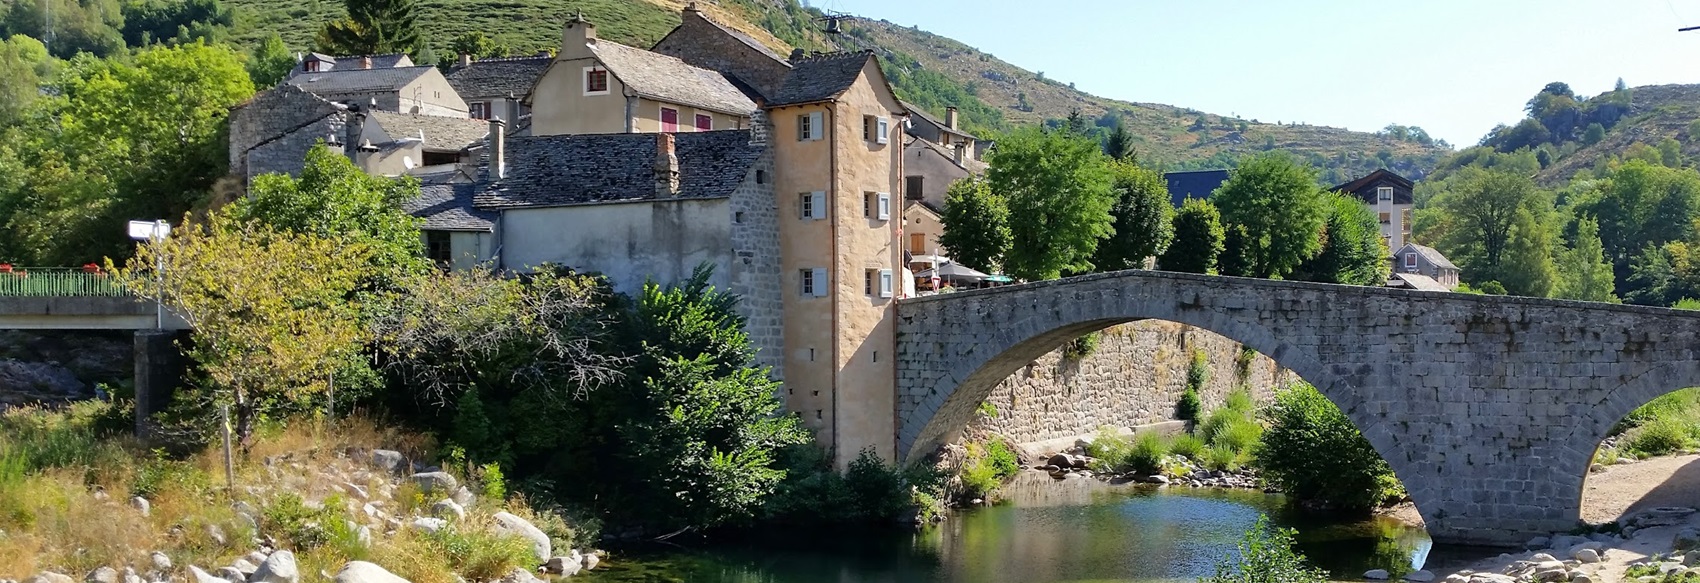 Le Pont-de-Montvert est situé en Lozère (Occitanie) entre Génolhac, Le Bleymard, Barre des Cévennes et Florac, au pied du Mont Lozère, sur le Chemin Stevenson GR®70, aux bords du Tarn.